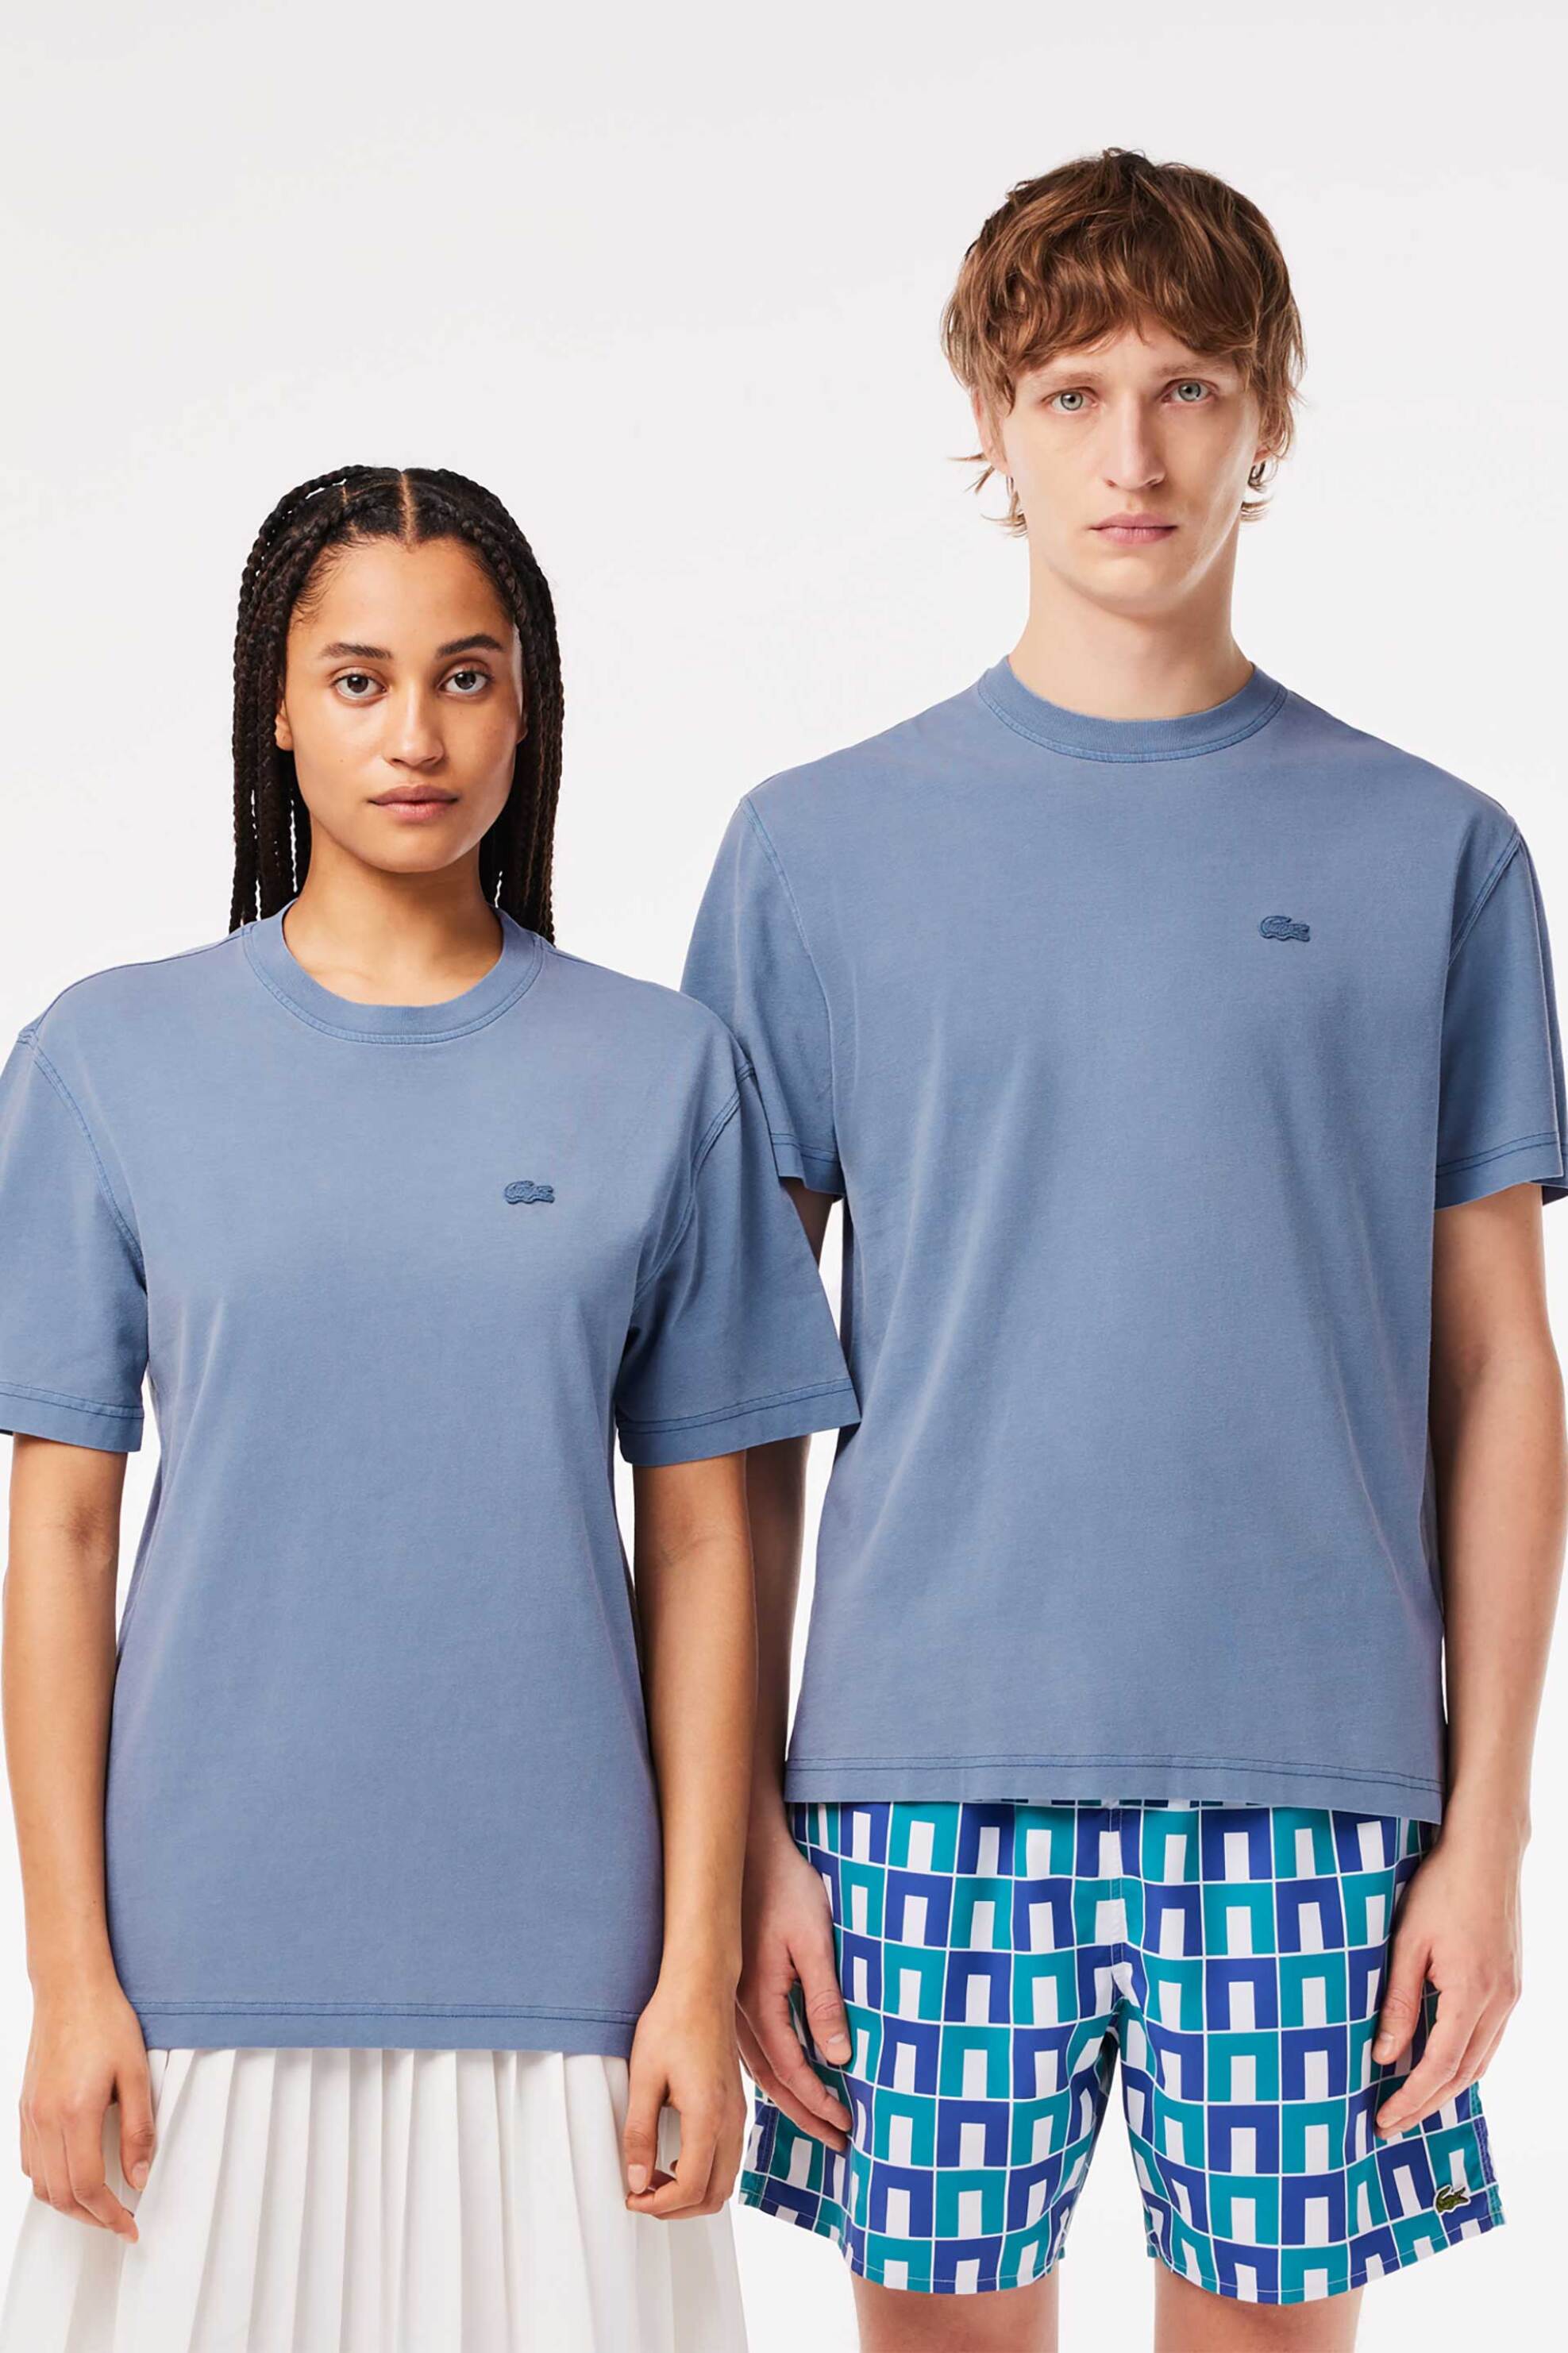 Ανδρική Μόδα > Ανδρικά Ρούχα > Ανδρικές Μπλούζες > Ανδρικά T-Shirts Lacoste unisex T-shirt με κεντημένο λογότυπο Classic Fit - TH8312 Μπλε